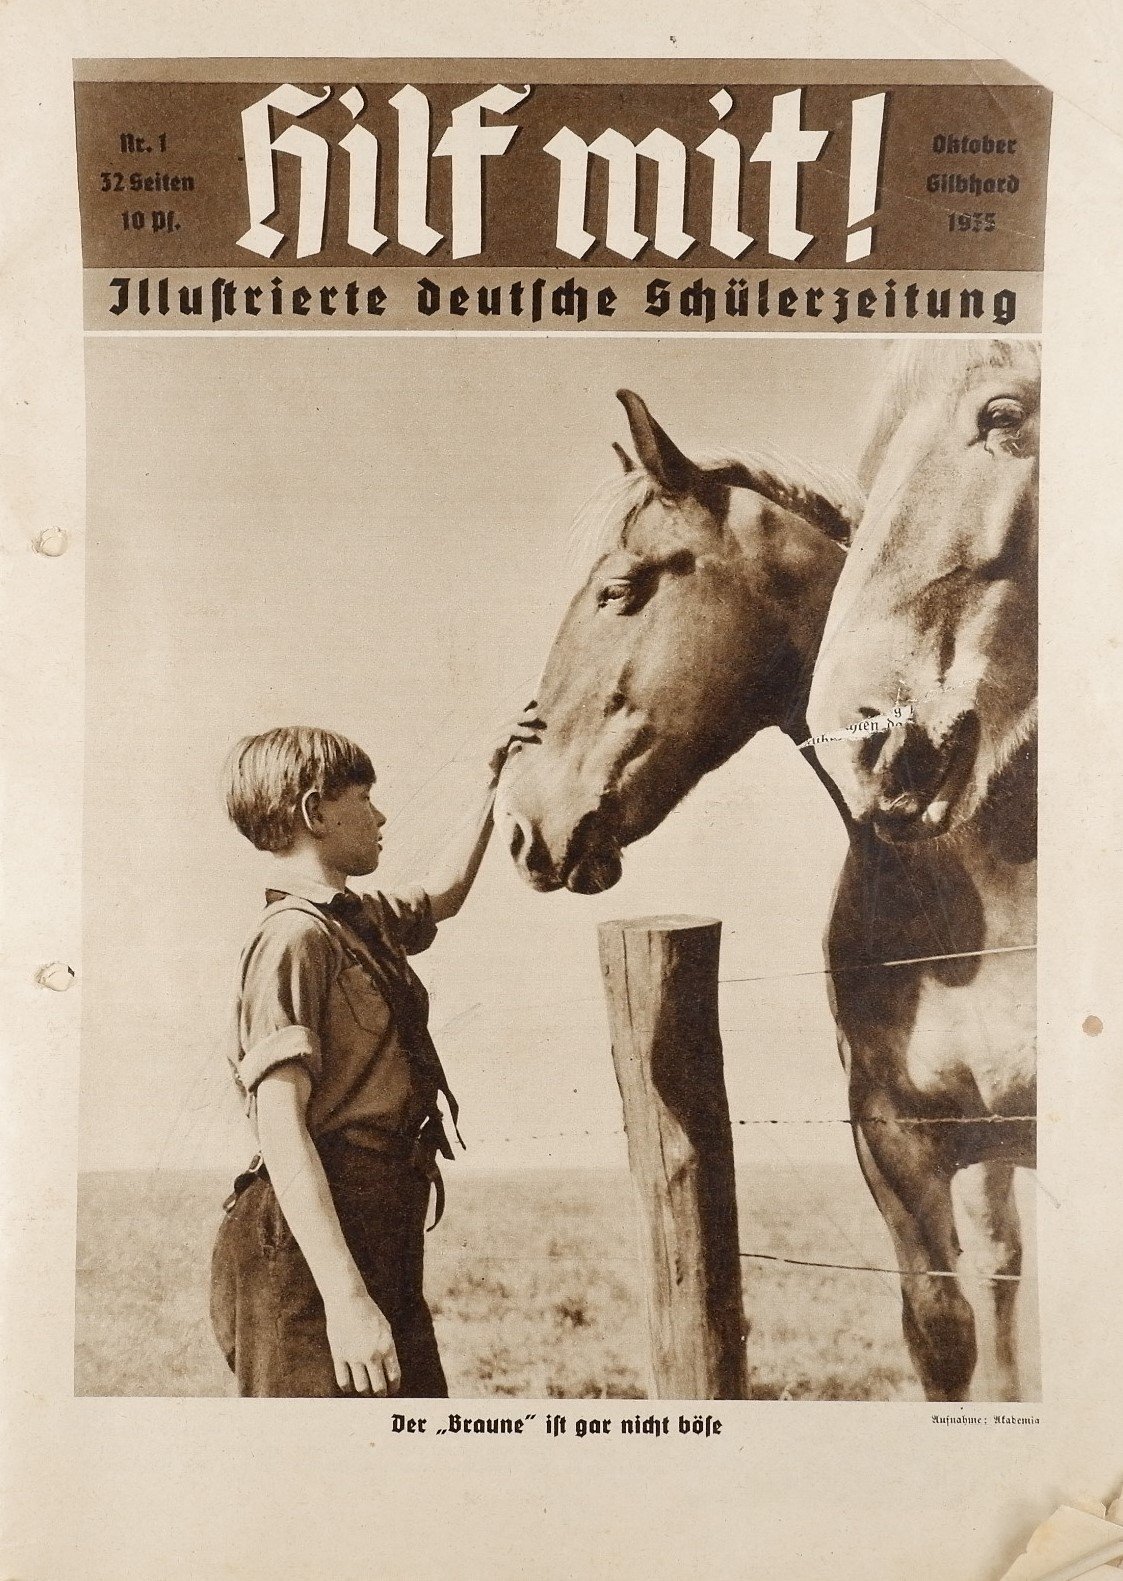 Hilf mit! - Illustrierte deutsche Schülerzeitung 1/1935 (Volkskunde- und Freilichtmuseum Roscheider Hof RR-F)